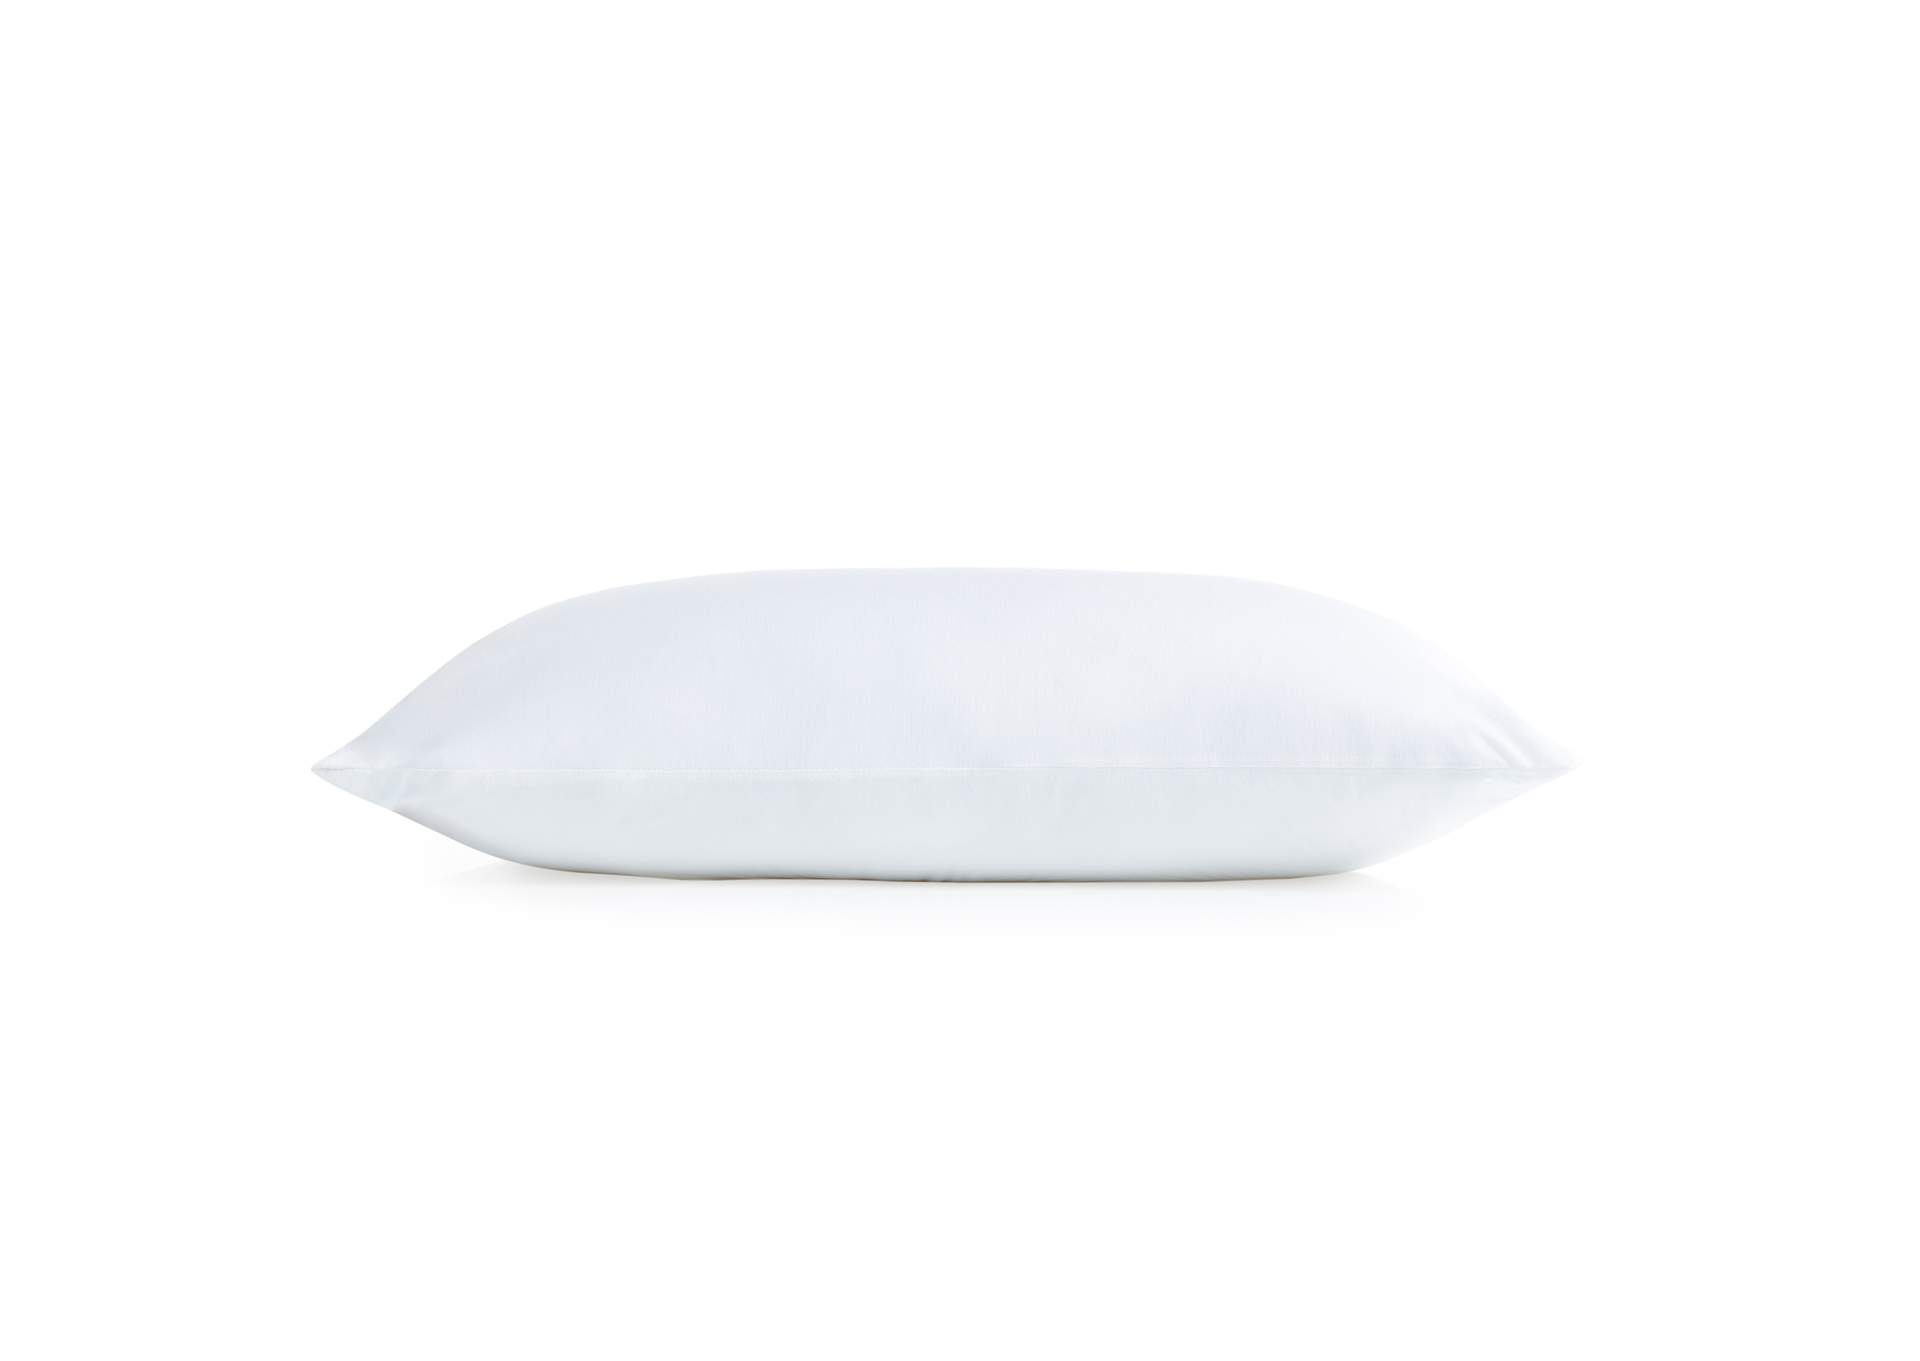 Malouf Encase HD Pillow Protector - Queen Size,Malouf